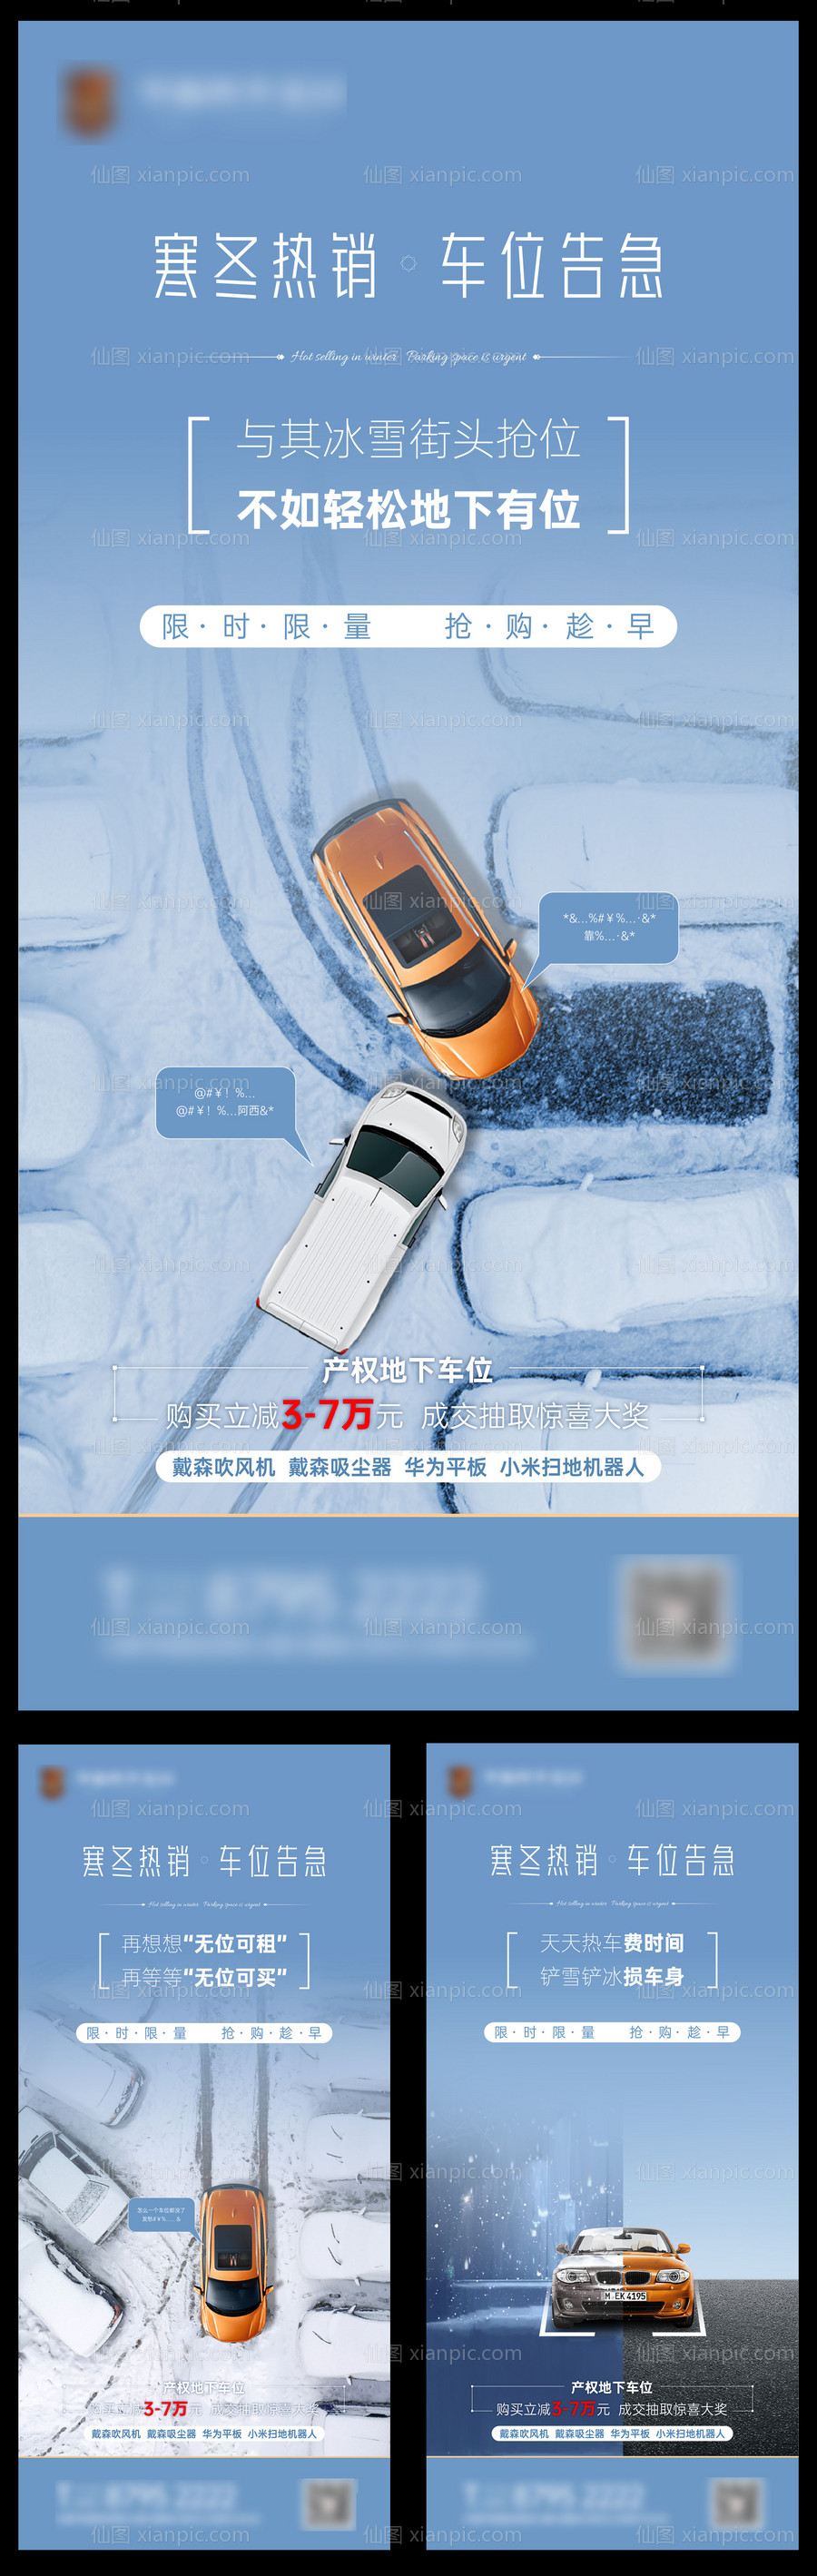 素材乐-下雪车位系列海报